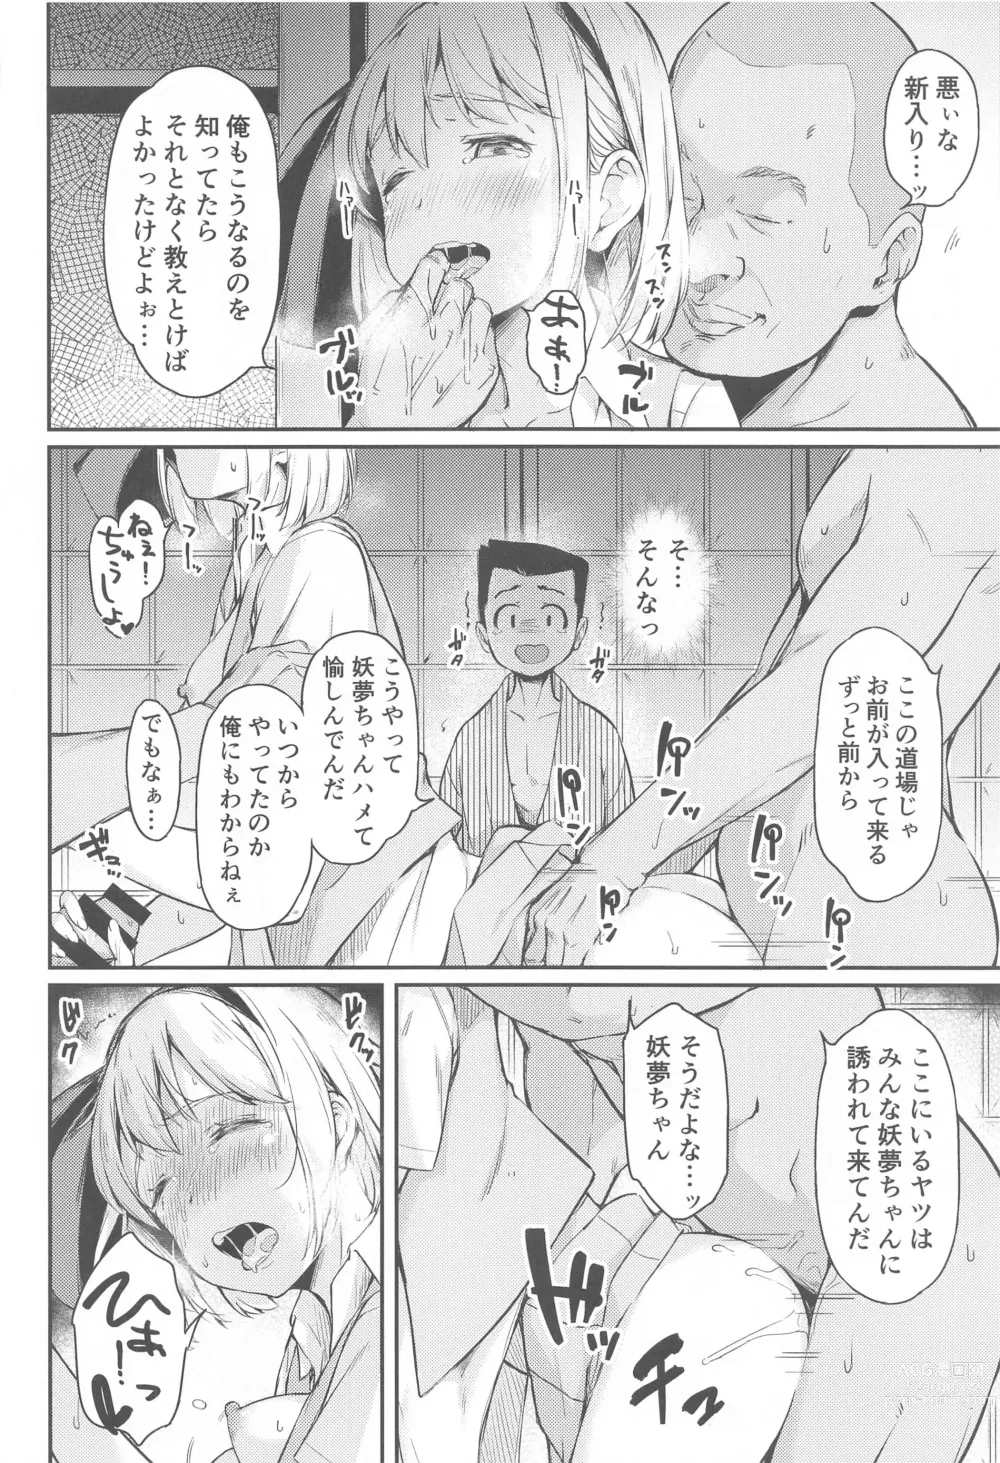 Page 19 of doujinshi Niwashi no Musume wa Minna ni Aisaretai.